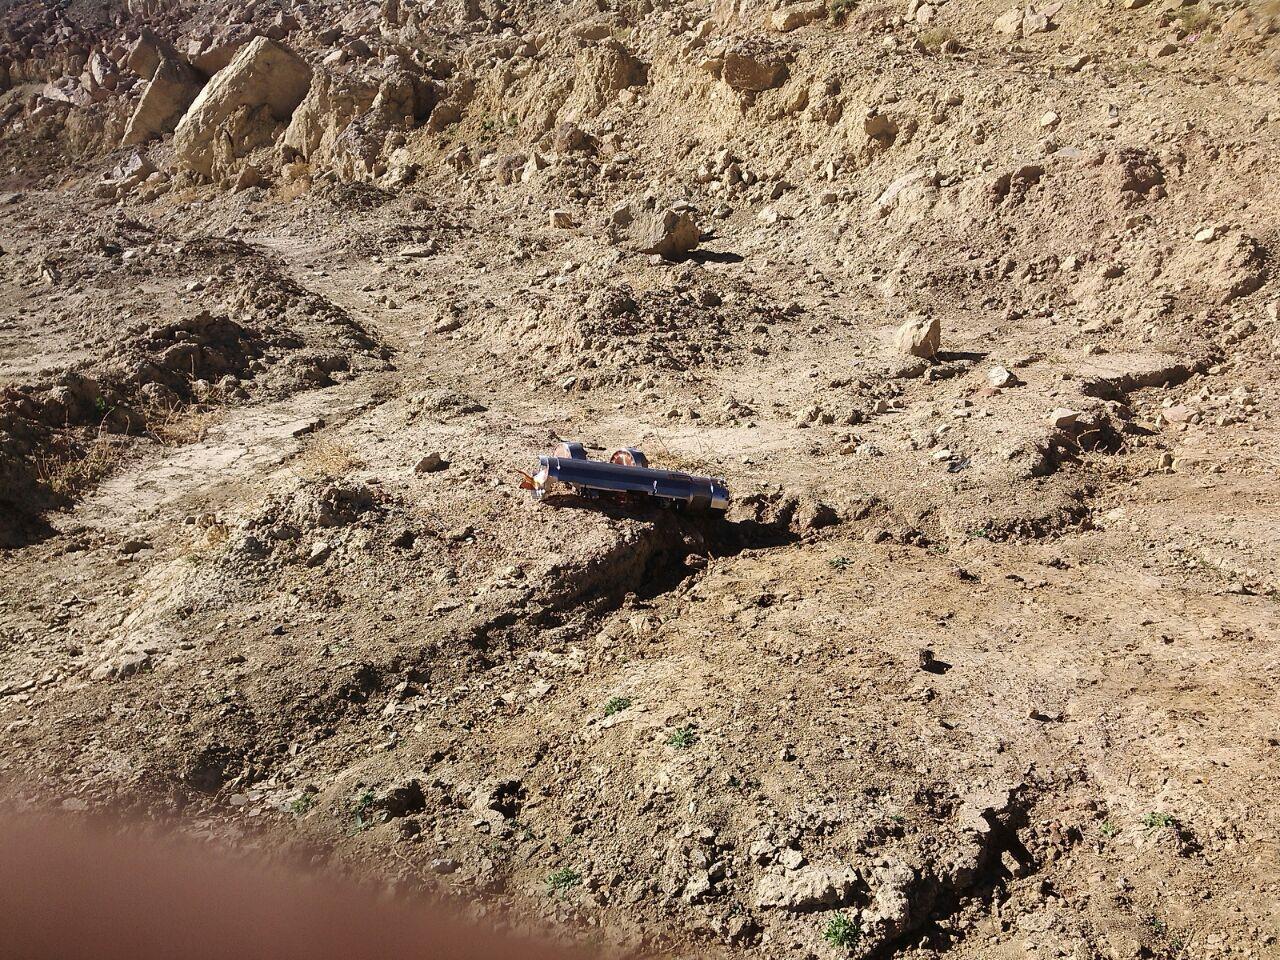 عبوة "بي إل يو-108" ما زال ملتصقا بها وحدتي "سكيت" (ذخائر صغيرة)، حيث سقطت، في إحدى مجاري المحجر التابع لمصنع إسمنت بمحافظة عمران، وقد سقطت أثناء غارة بتاريخ 15 فبراير/شباط 2016. 